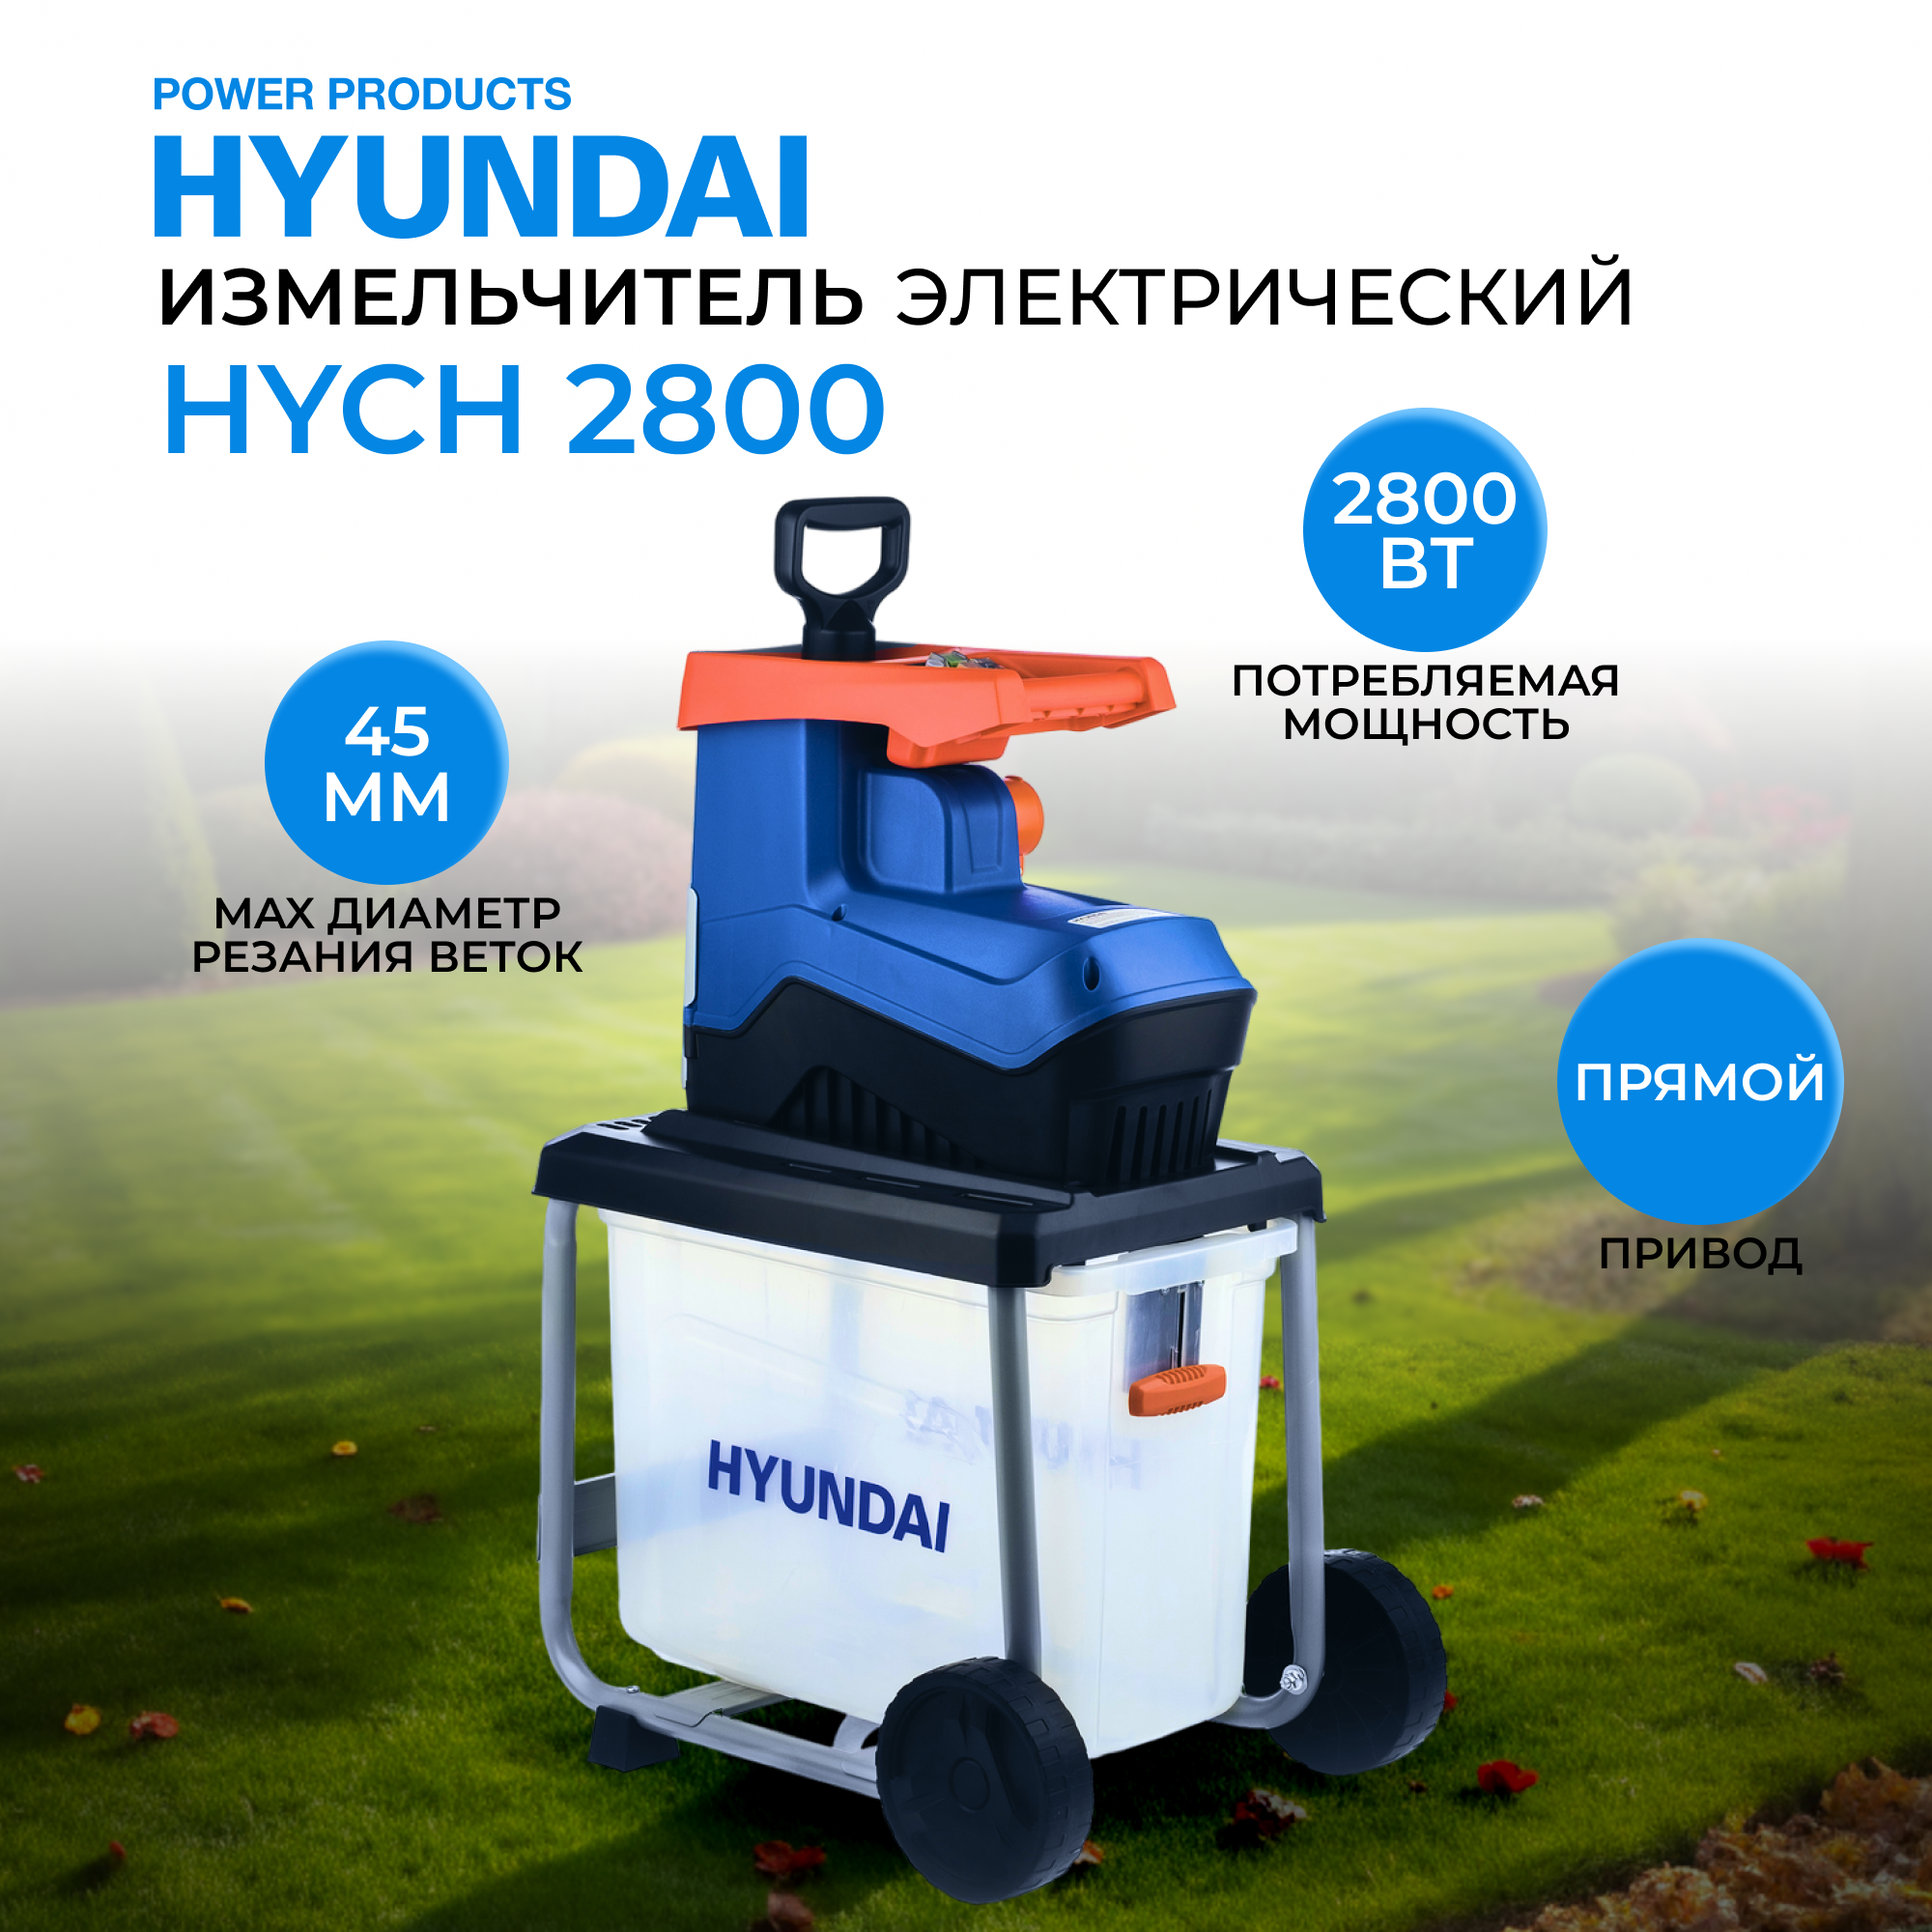 Электрический садовый измельчитель Hyundai HYCH 2800 для измельчения листьев и веток